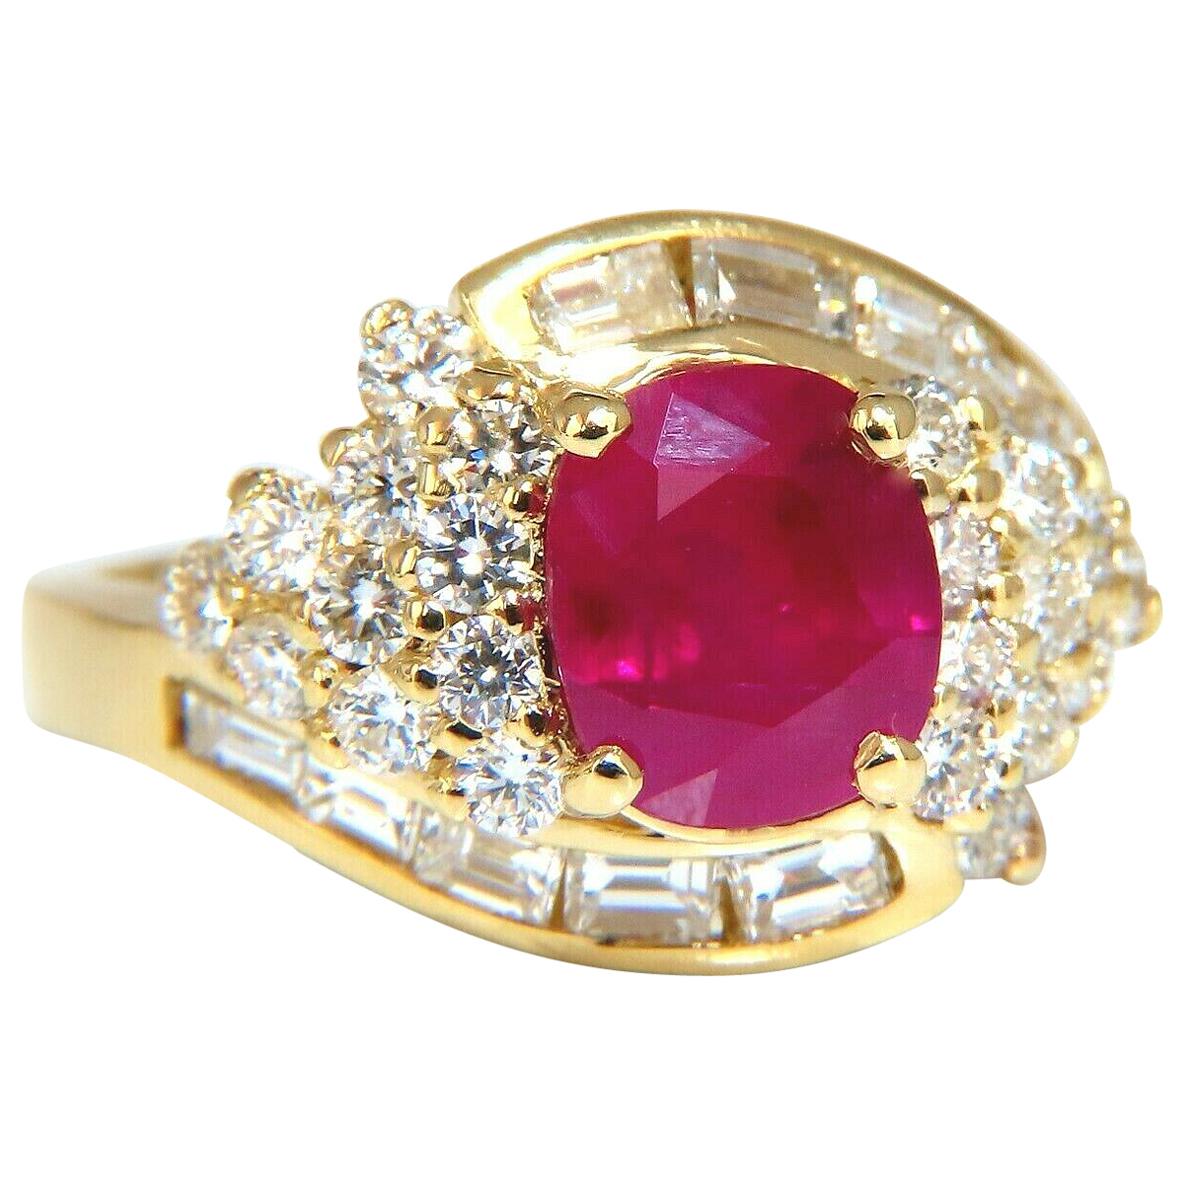 GIA Certified 4.08 Carat Burma Red Ruby Diamonds Ring 18 Karat